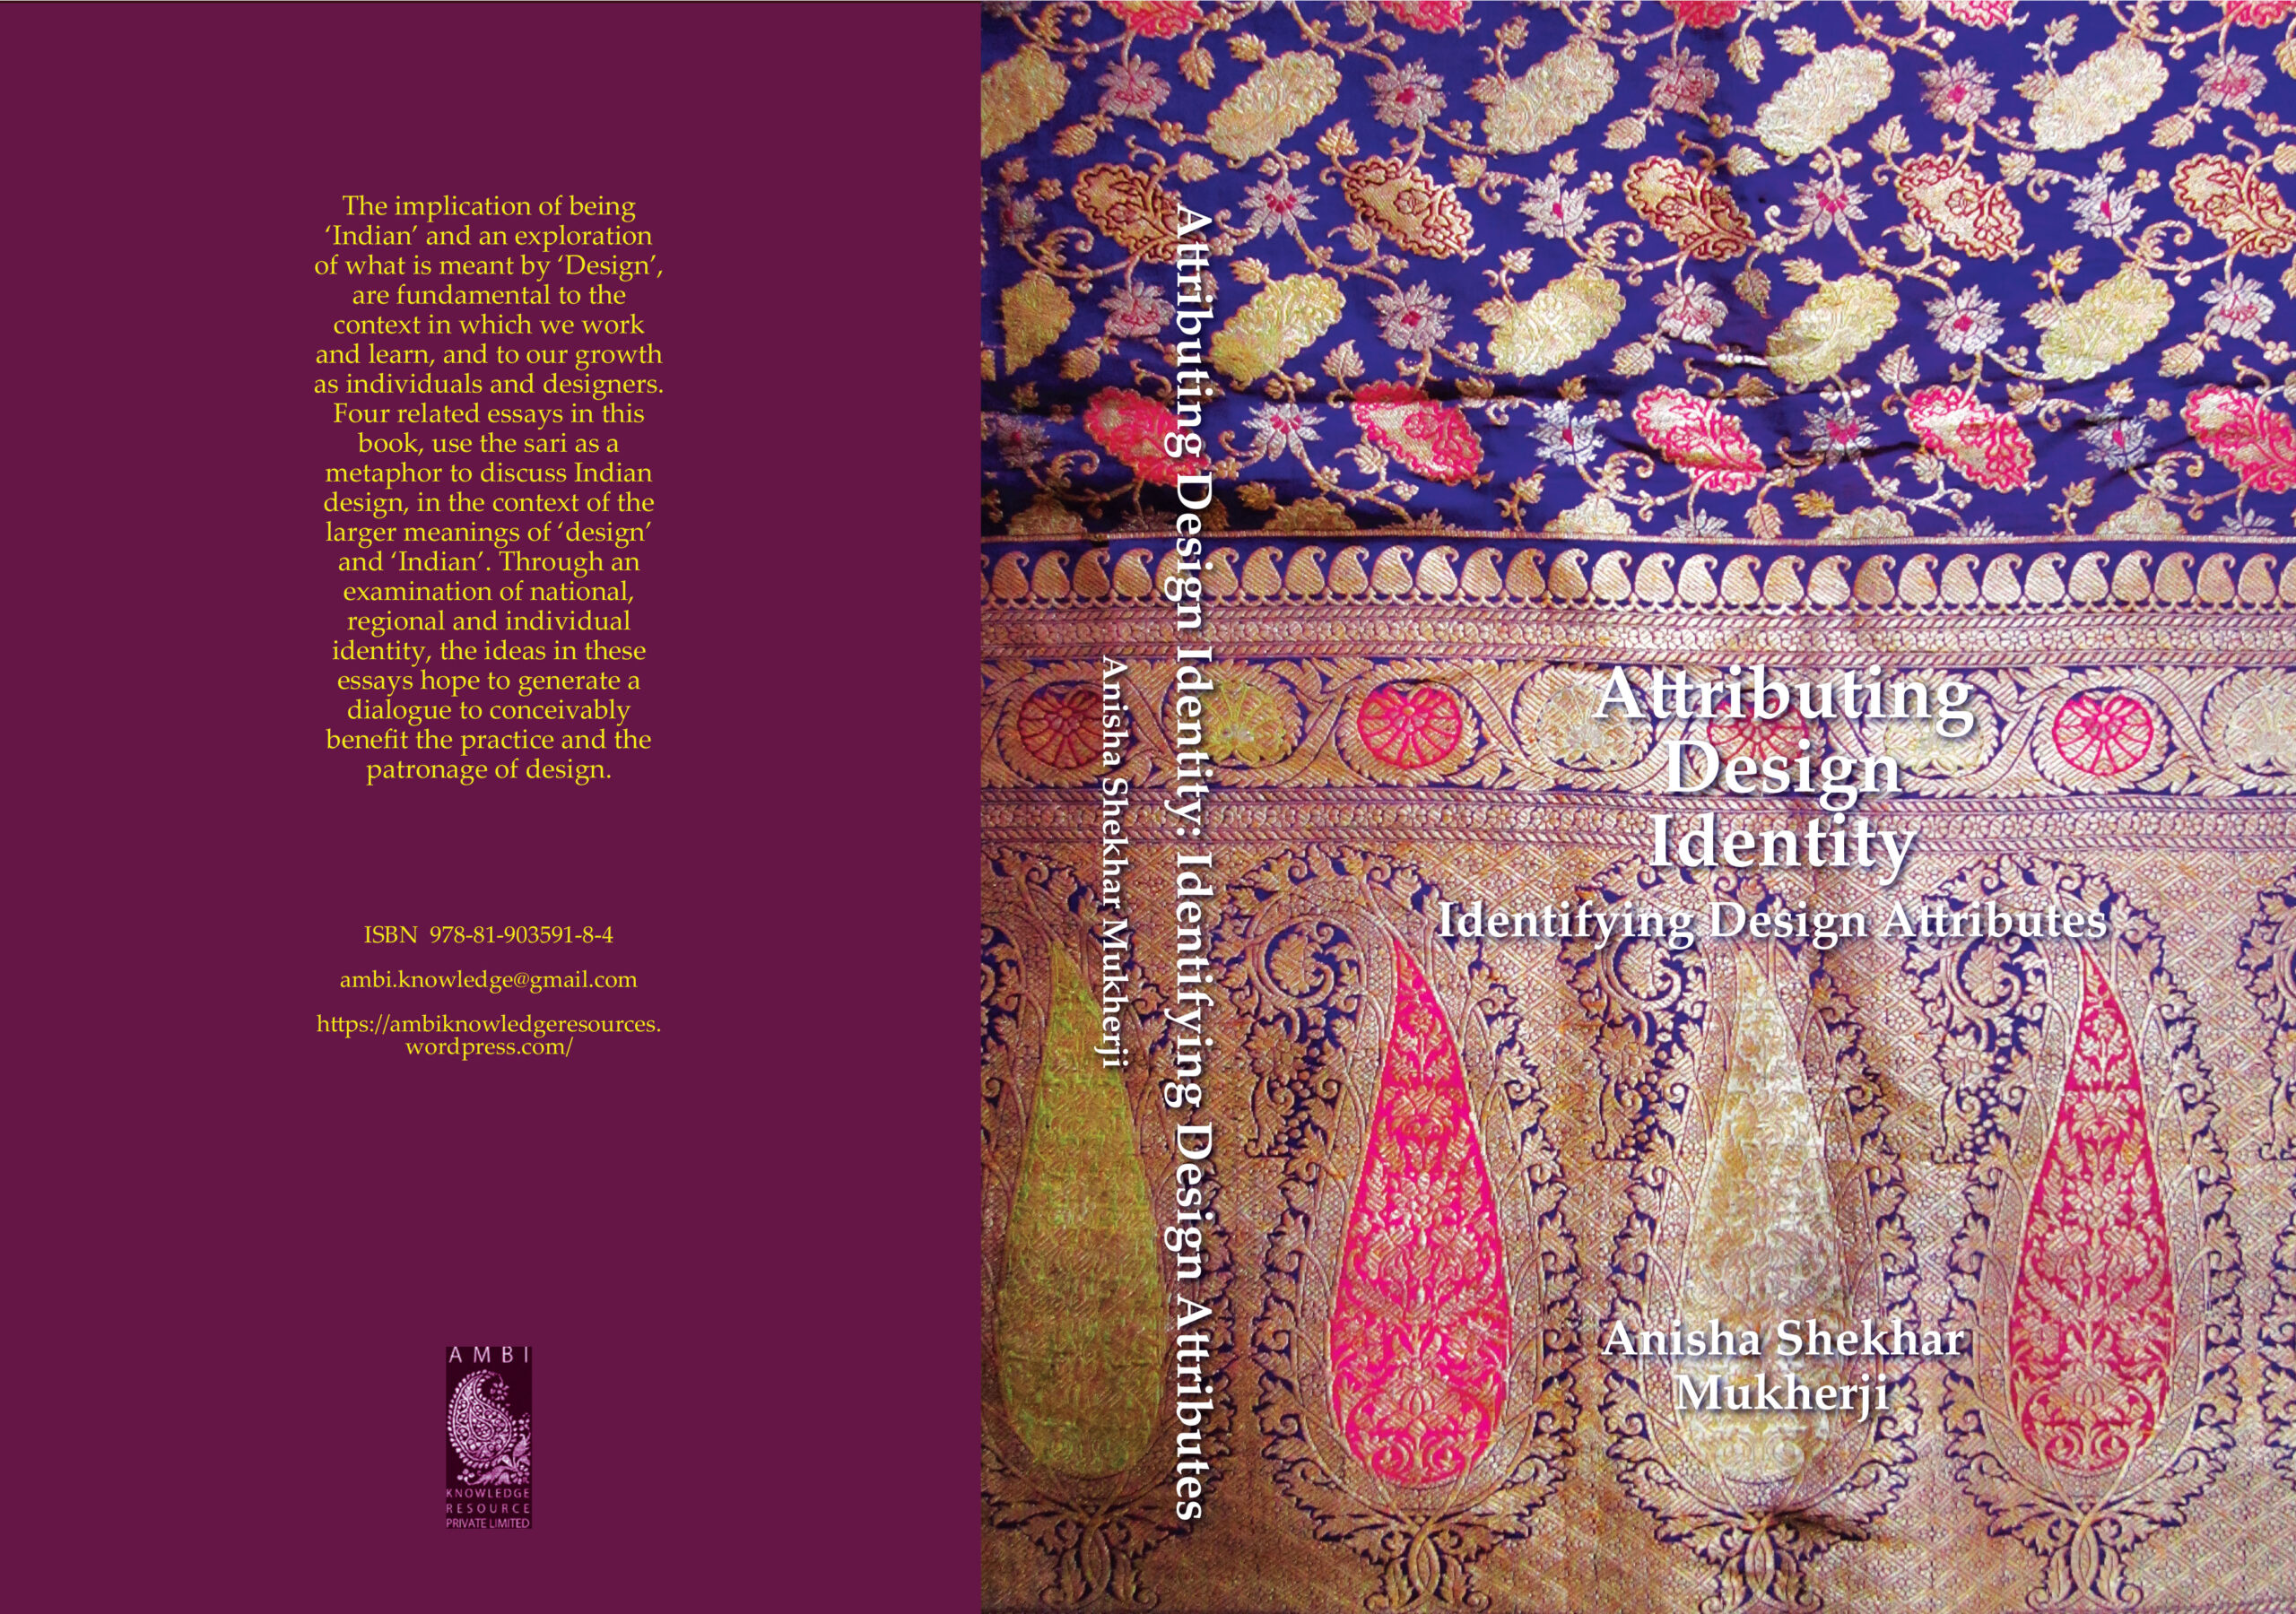 Design Attributes Book by Anisha Shekhar Mukherji